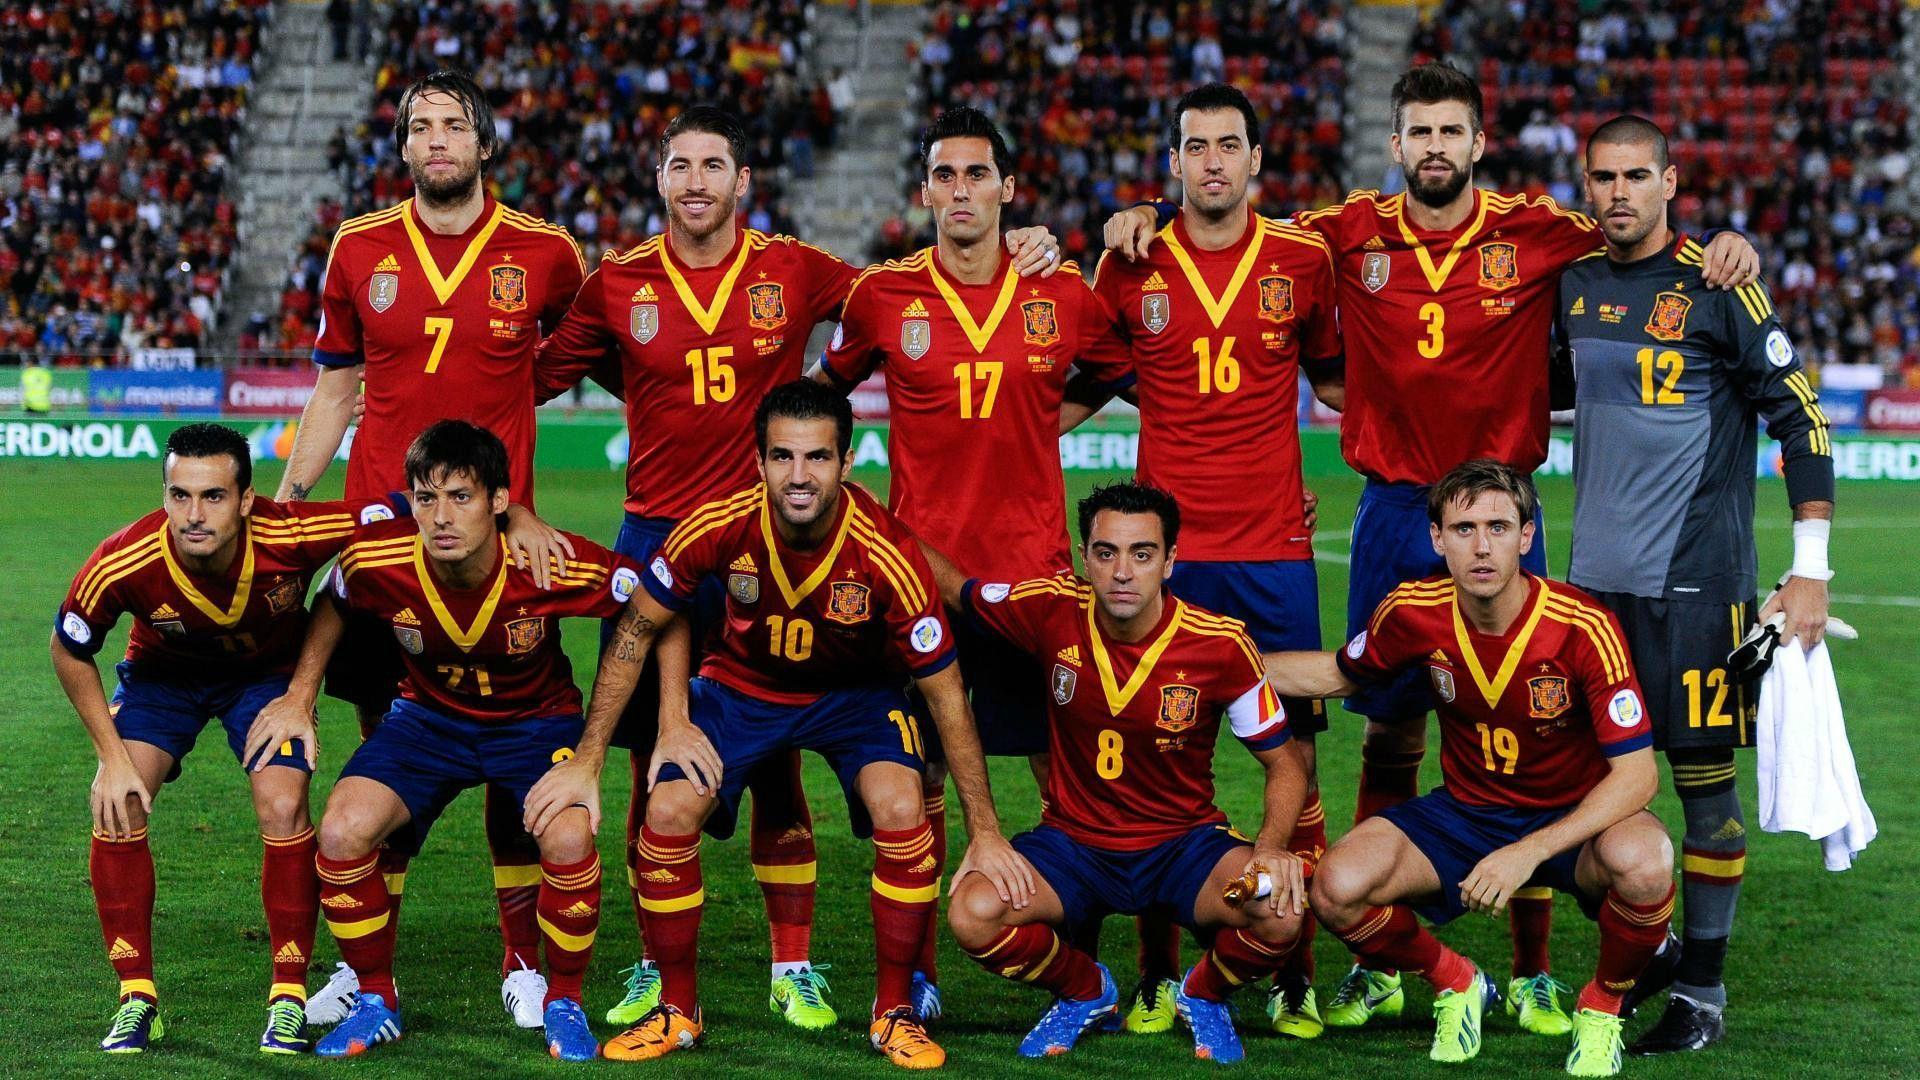 Hd Photo Of Spain Football Club Spain Football Team Wallpaper